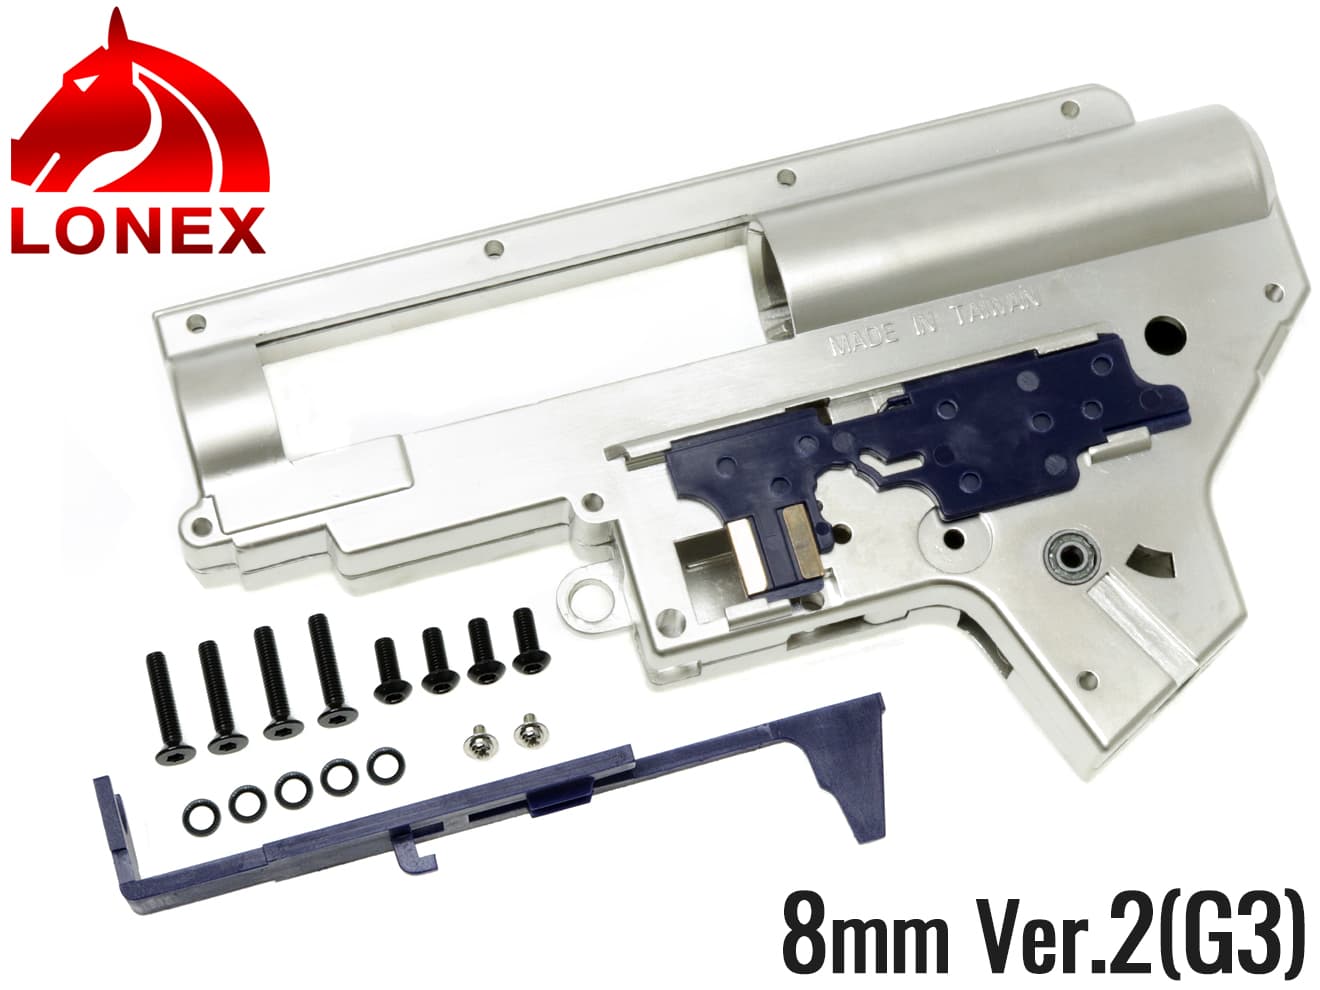 LONEX 8mm 強化メカボックスセット Ver2 G3◆東京マルイ系 G3A3 G3SASなど ミリネジ化 タペットプレート/ベアリング付 高強度メッキ処理